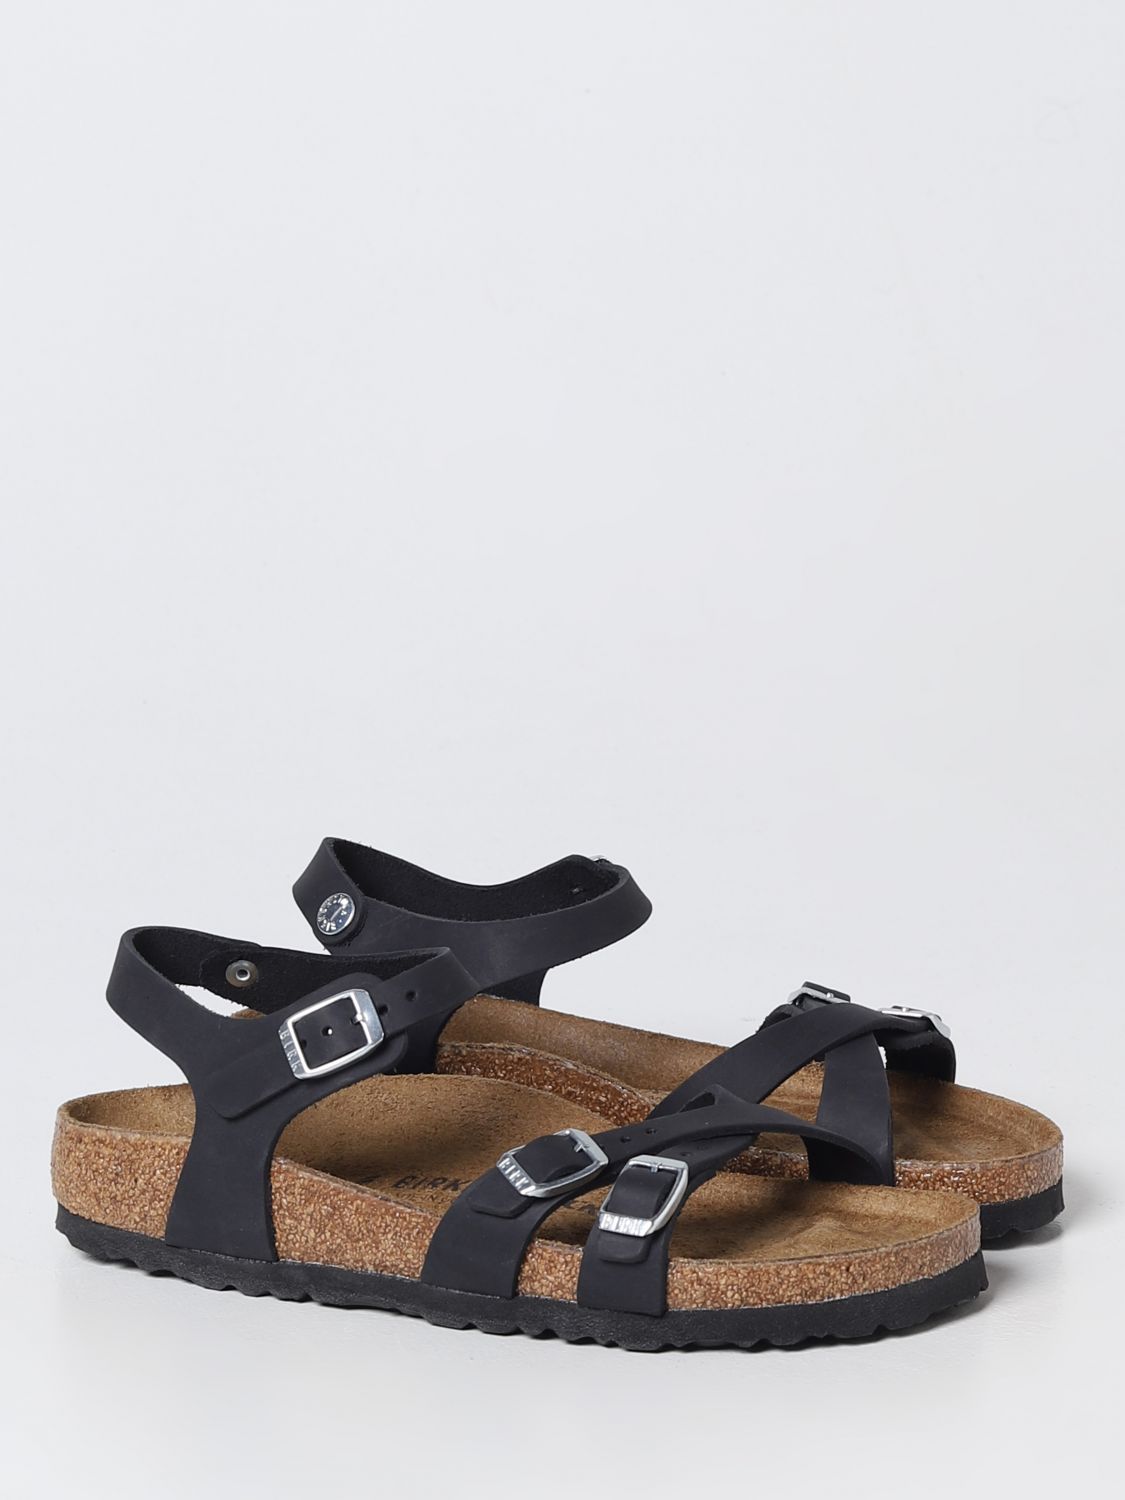 kwaad Vlekkeloos Verdragen BIRKENSTOCK: flat sandals for woman - Black | Birkenstock flat sandals  1021487 online on GIGLIO.COM